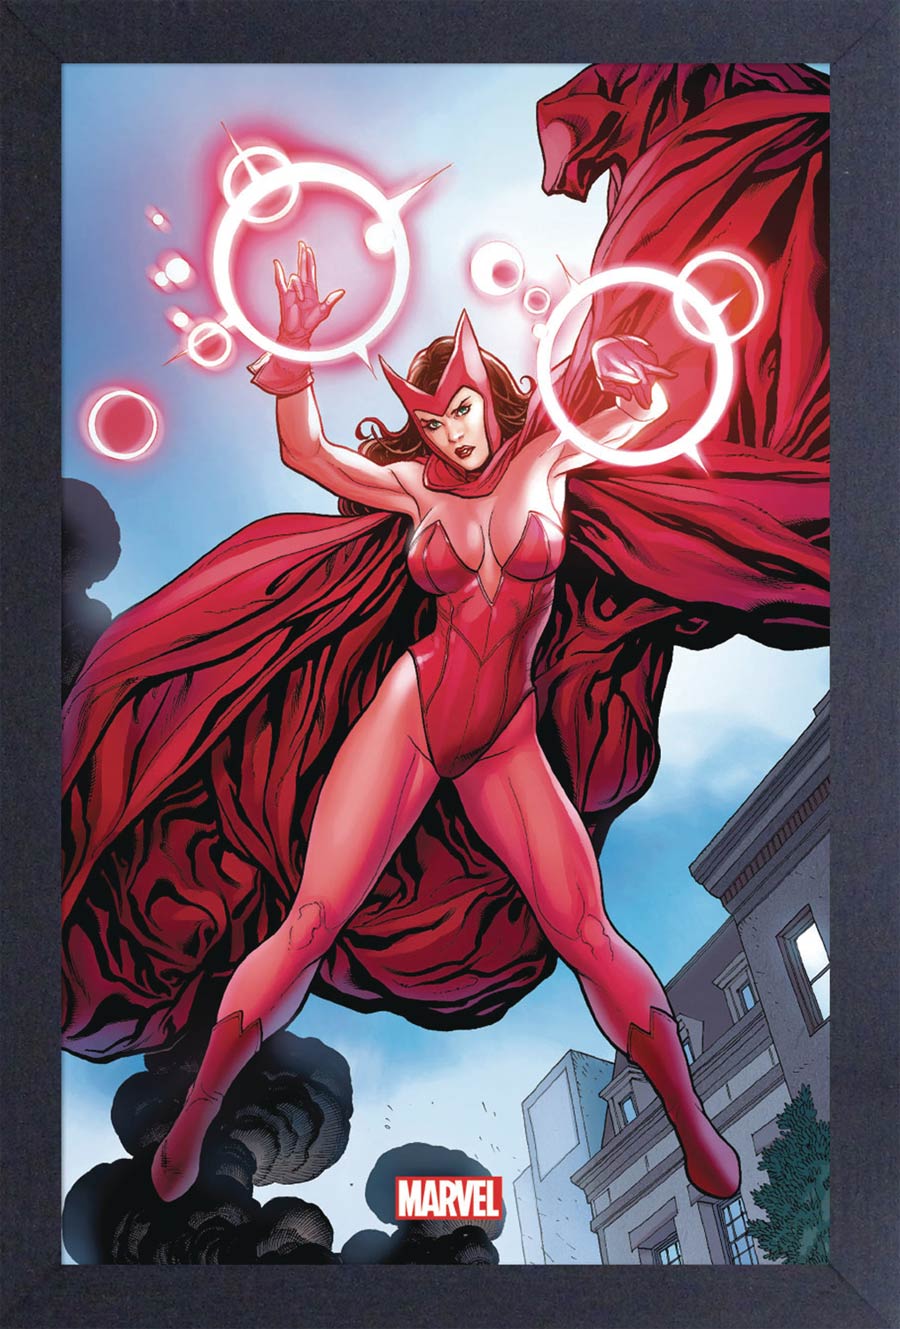 Marvel 11x17 Framed Print - Scarlet Witch